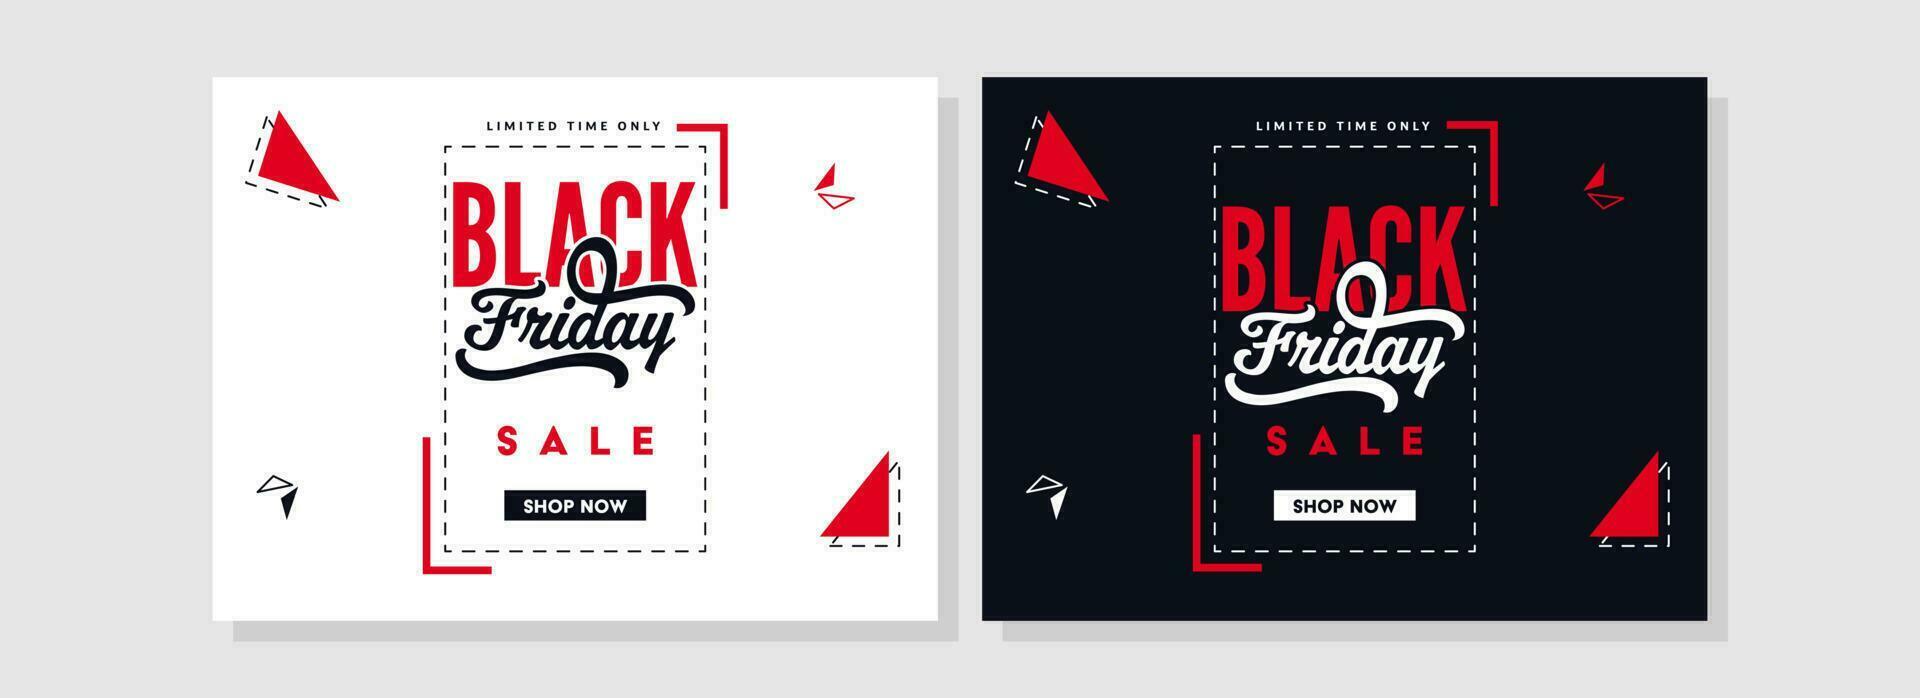 svart fredag försäljning affisch design dekorerad med triangel former i två Färg alternativ. vektor